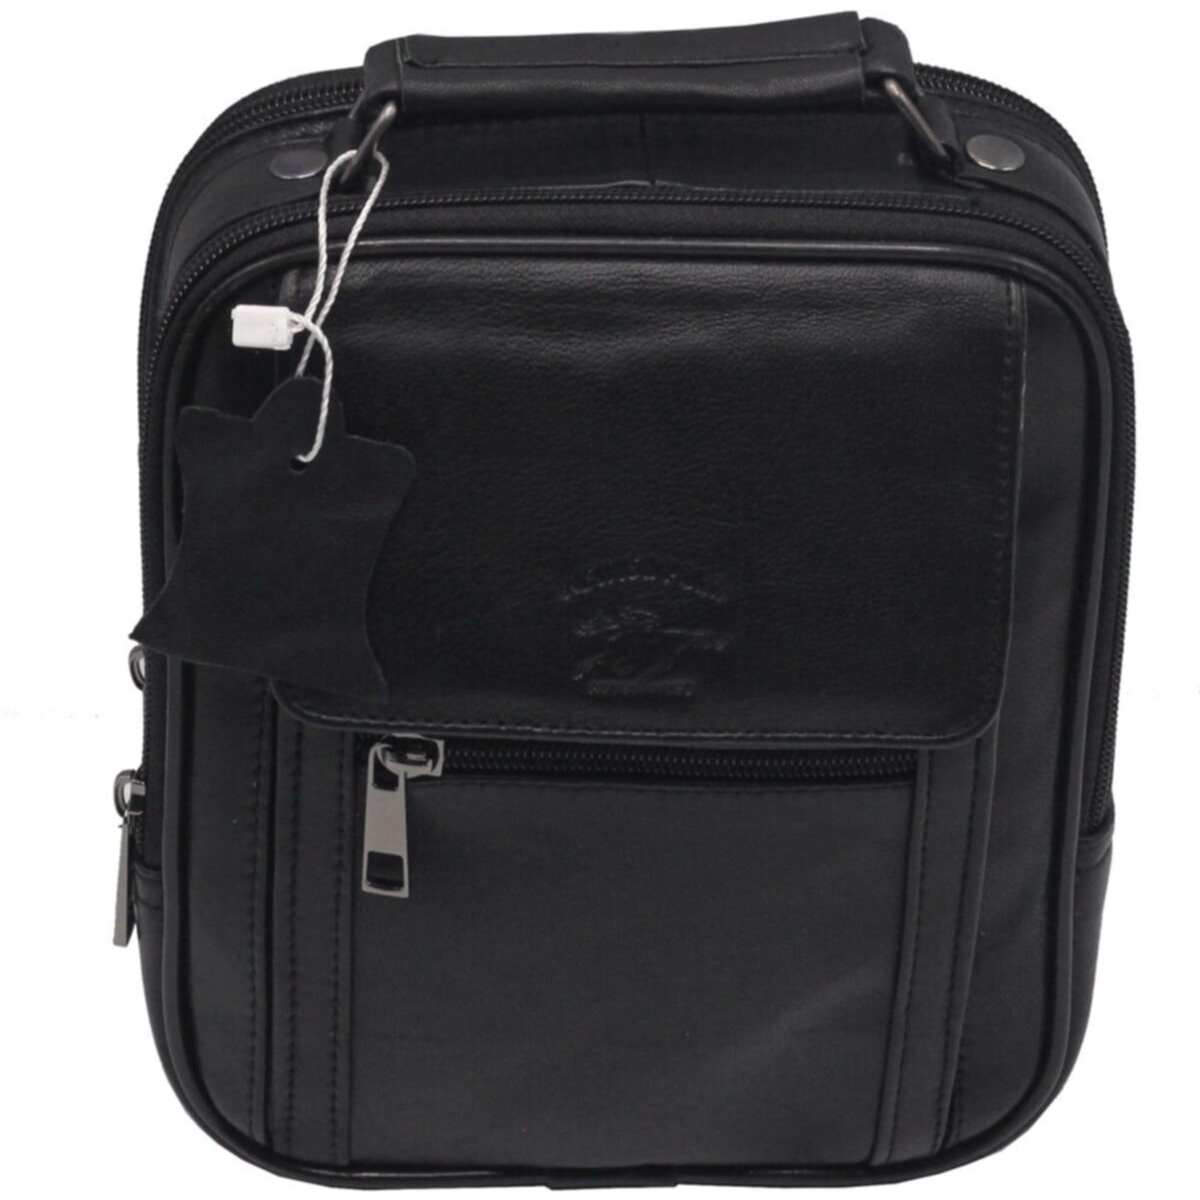 Flo buybox nw-3001 kapaklı orta boy hakiki deri kasalı erkek el ve omuz çantası SİYAH. 2